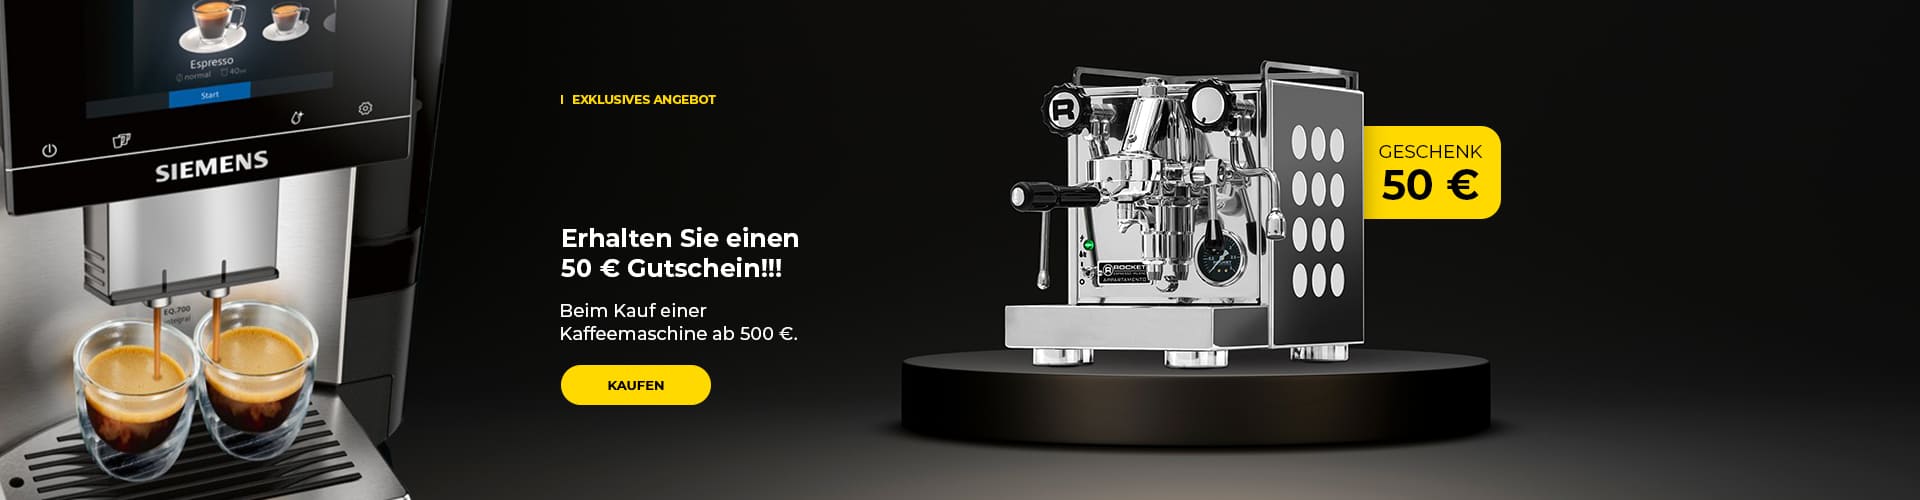 Erhalten Sie einen 50 € Gutschein!!! Beim Kauf einer Kaffeemaschine ab 500 €.